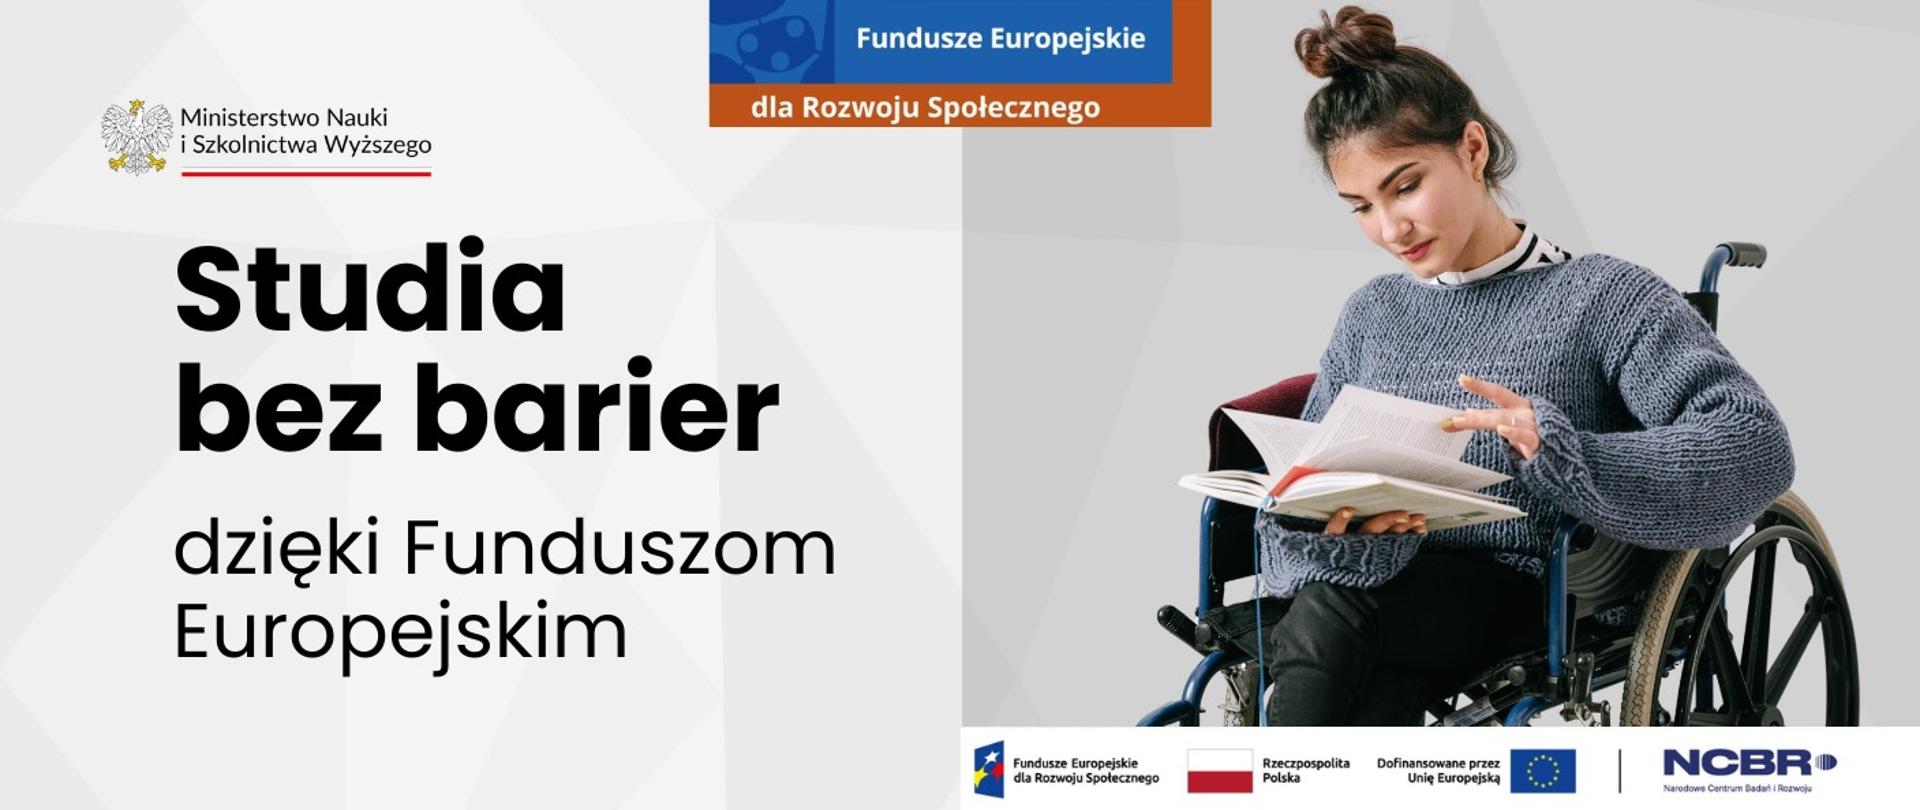 Studentka na wózku inwalidzkim czyta książkę, obok napis Studia bez barier dzięki Funduszom Europejskim.